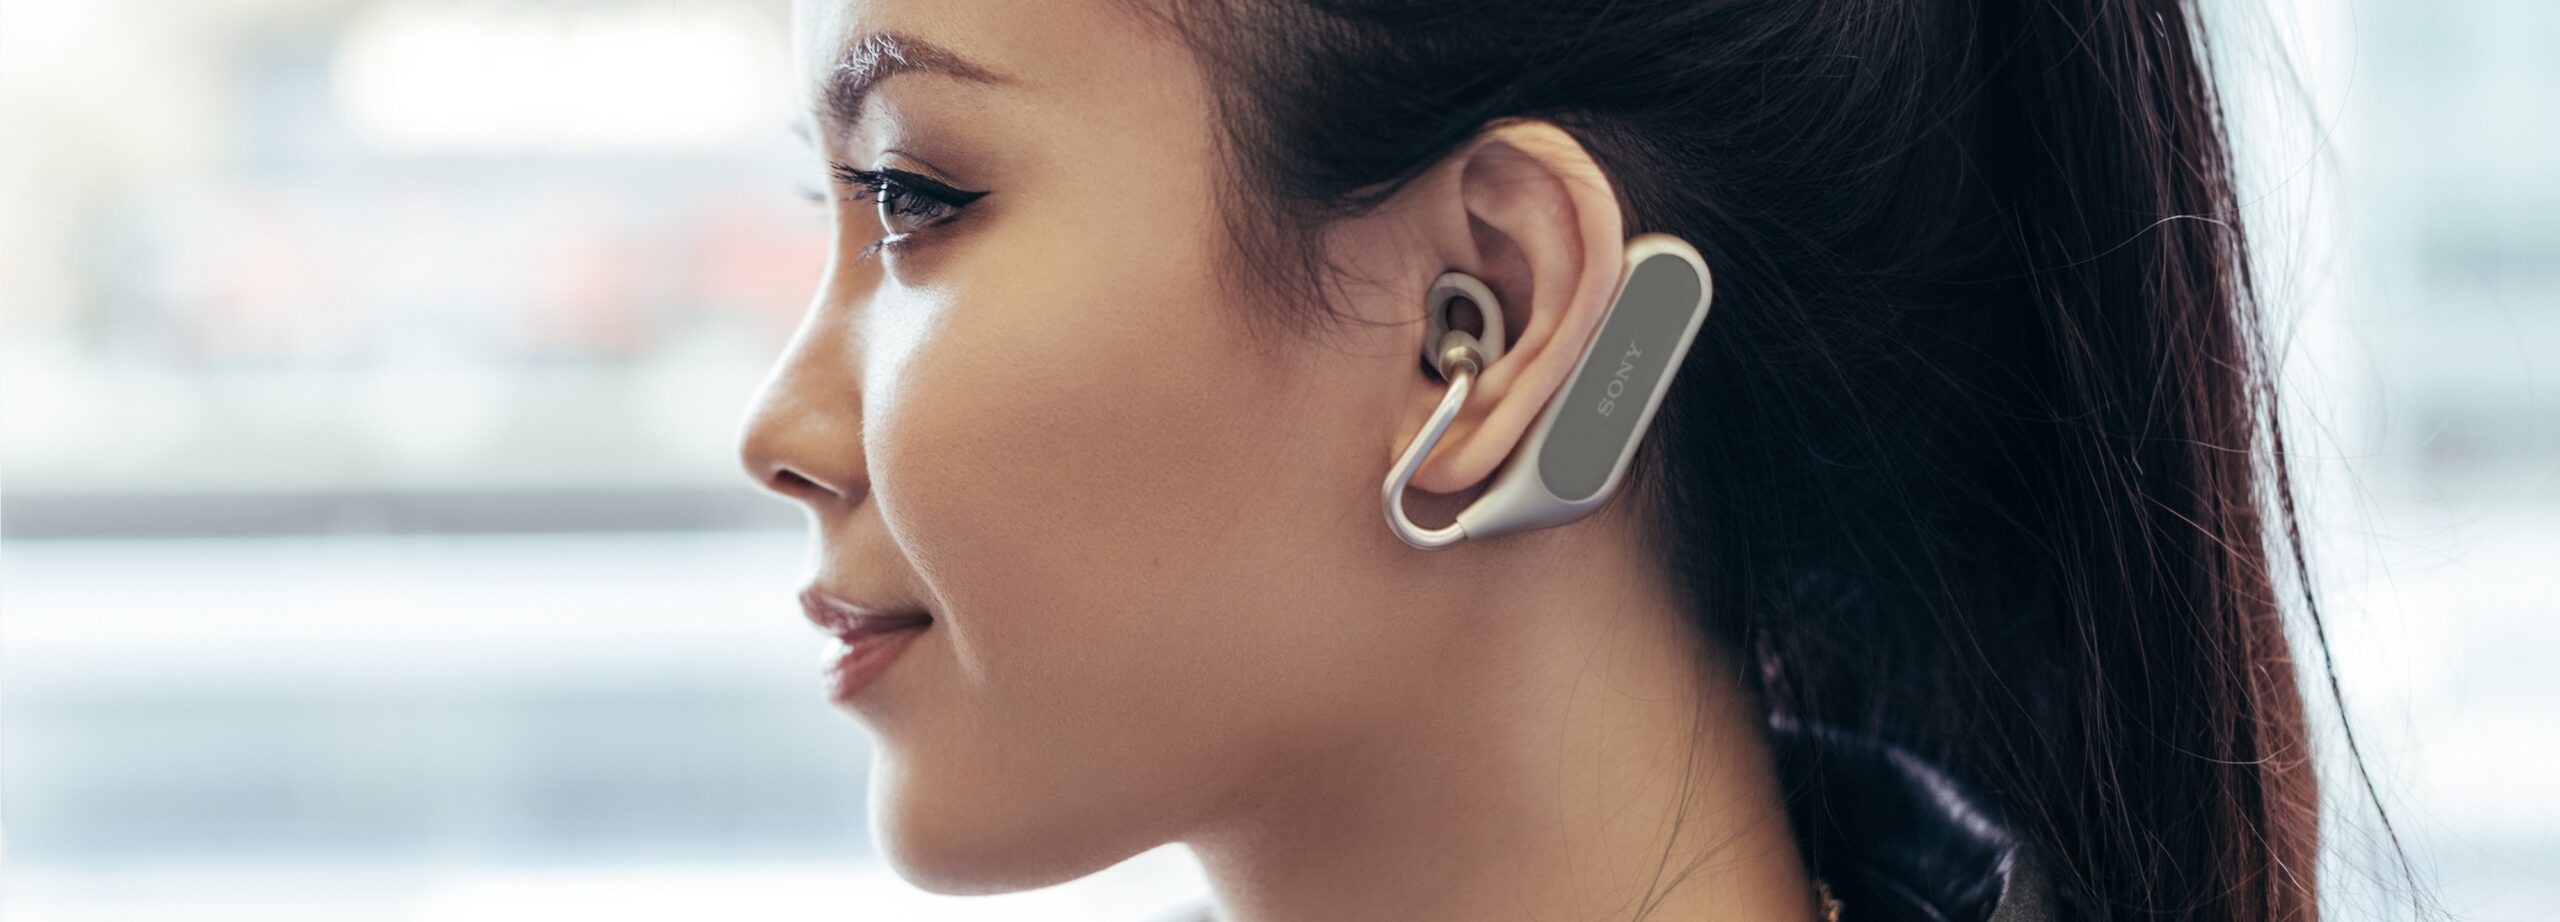 Sony Xperia Ear Concept’le Şarkılar Hep Aklımıza Takılmış Gibi